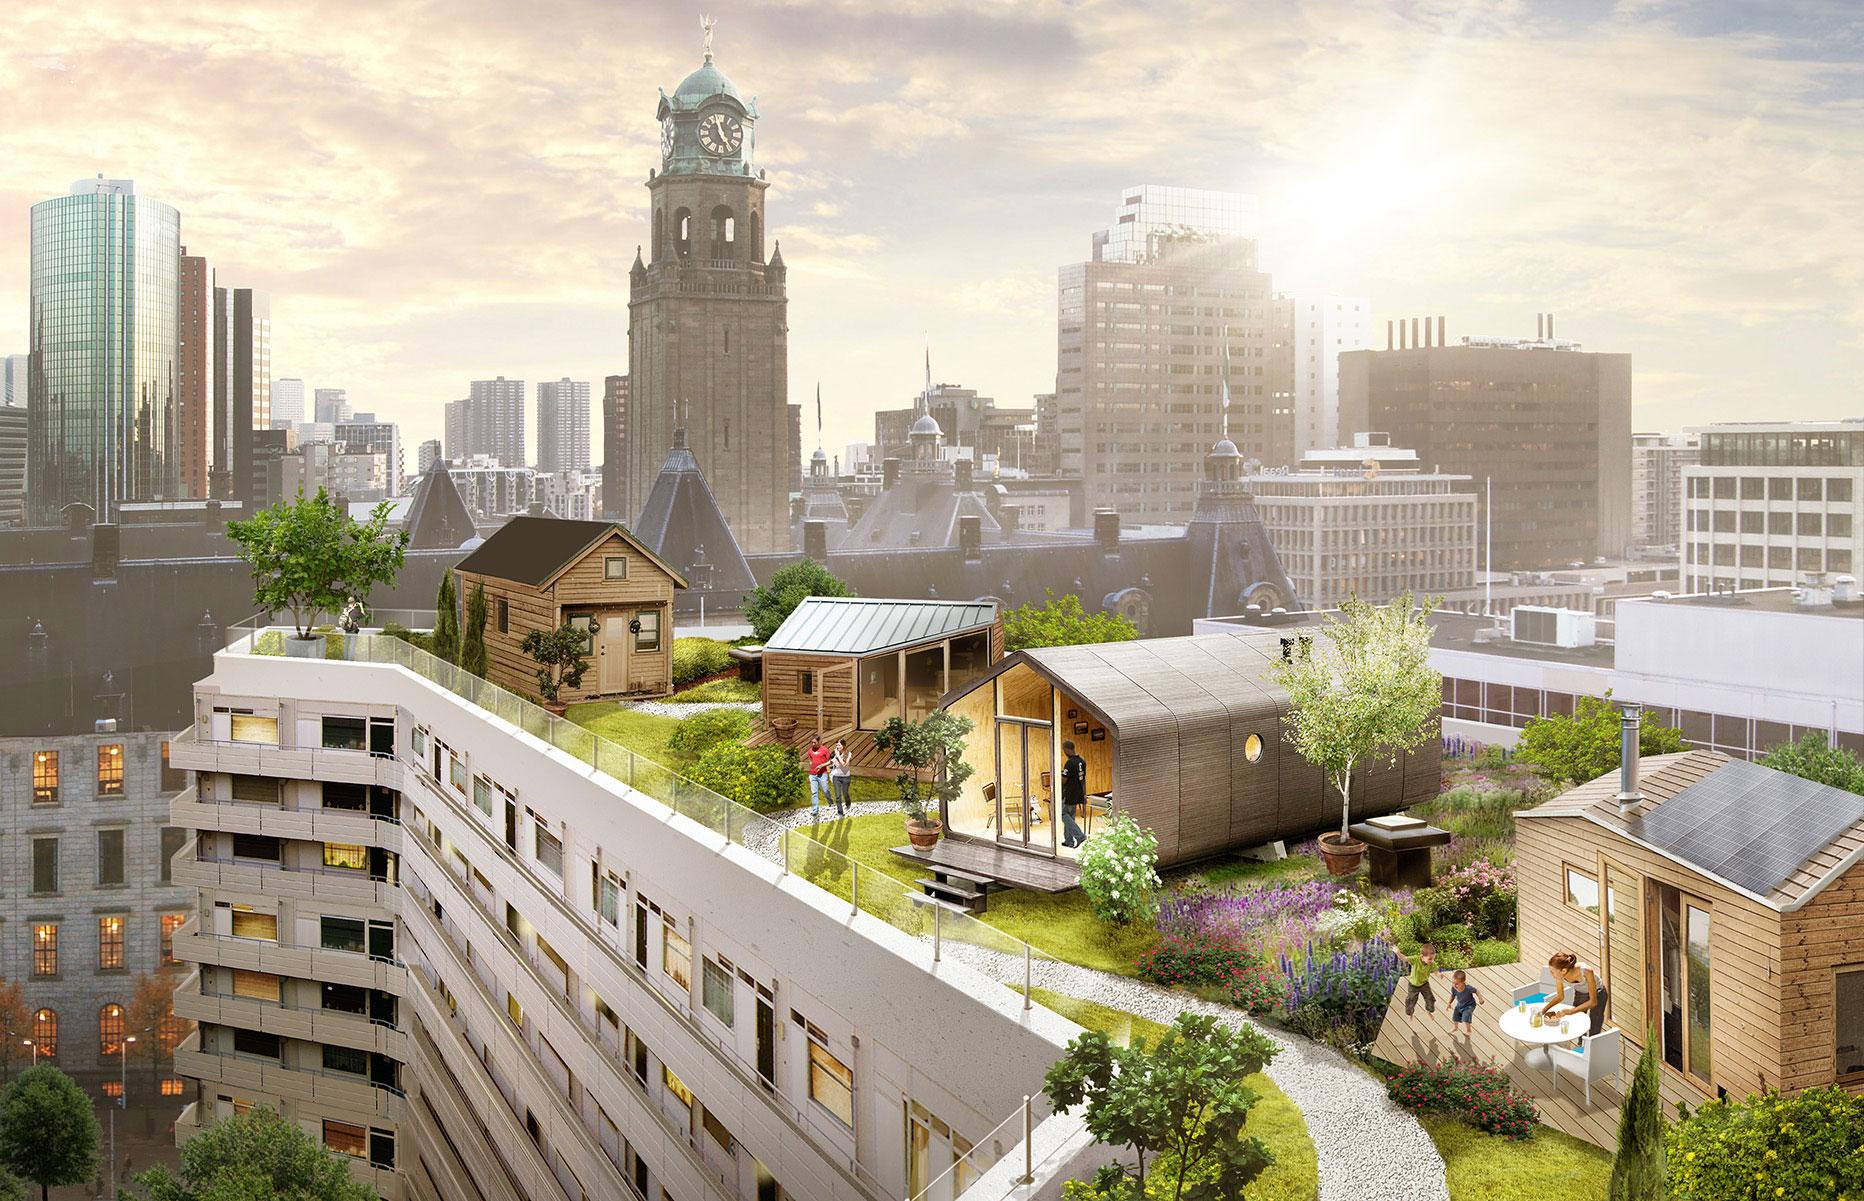 Modélisation 3D d'un toit de Rotterdam sur lequel ont été installées petites maisons d'habitation, pelouses et plantes, avec une vue imprenable sur la métropole.